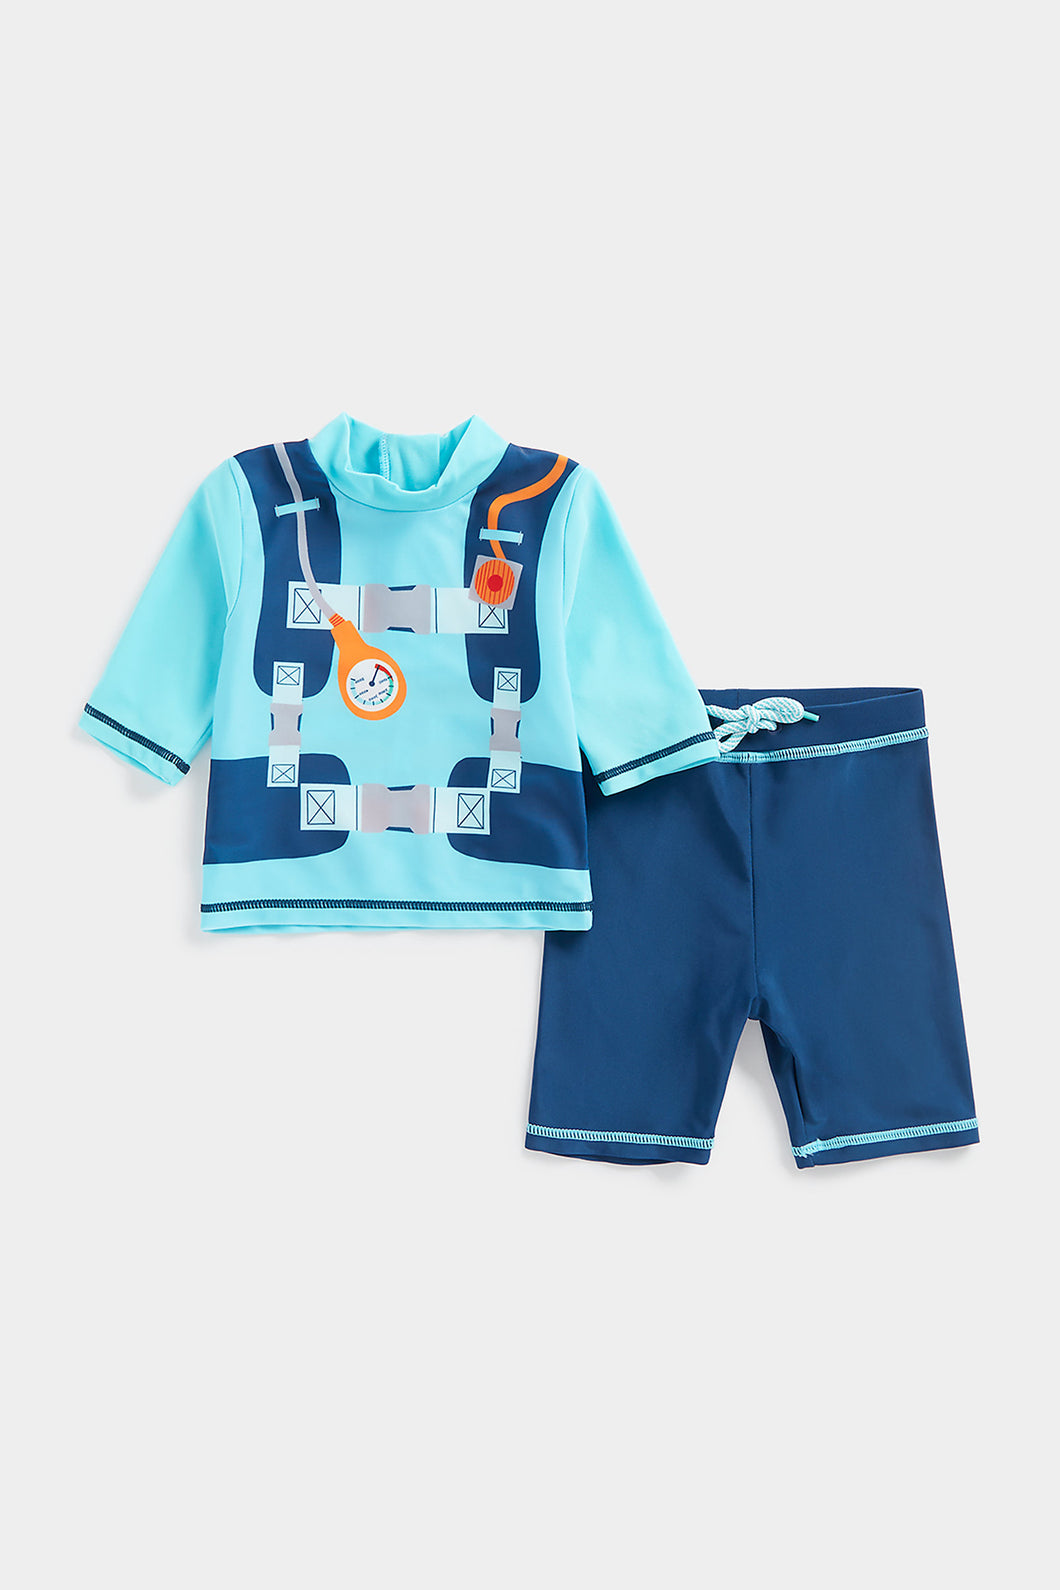 Mothercare Diver Dress-Up Sunsafe Rash Vest and Shorts Set